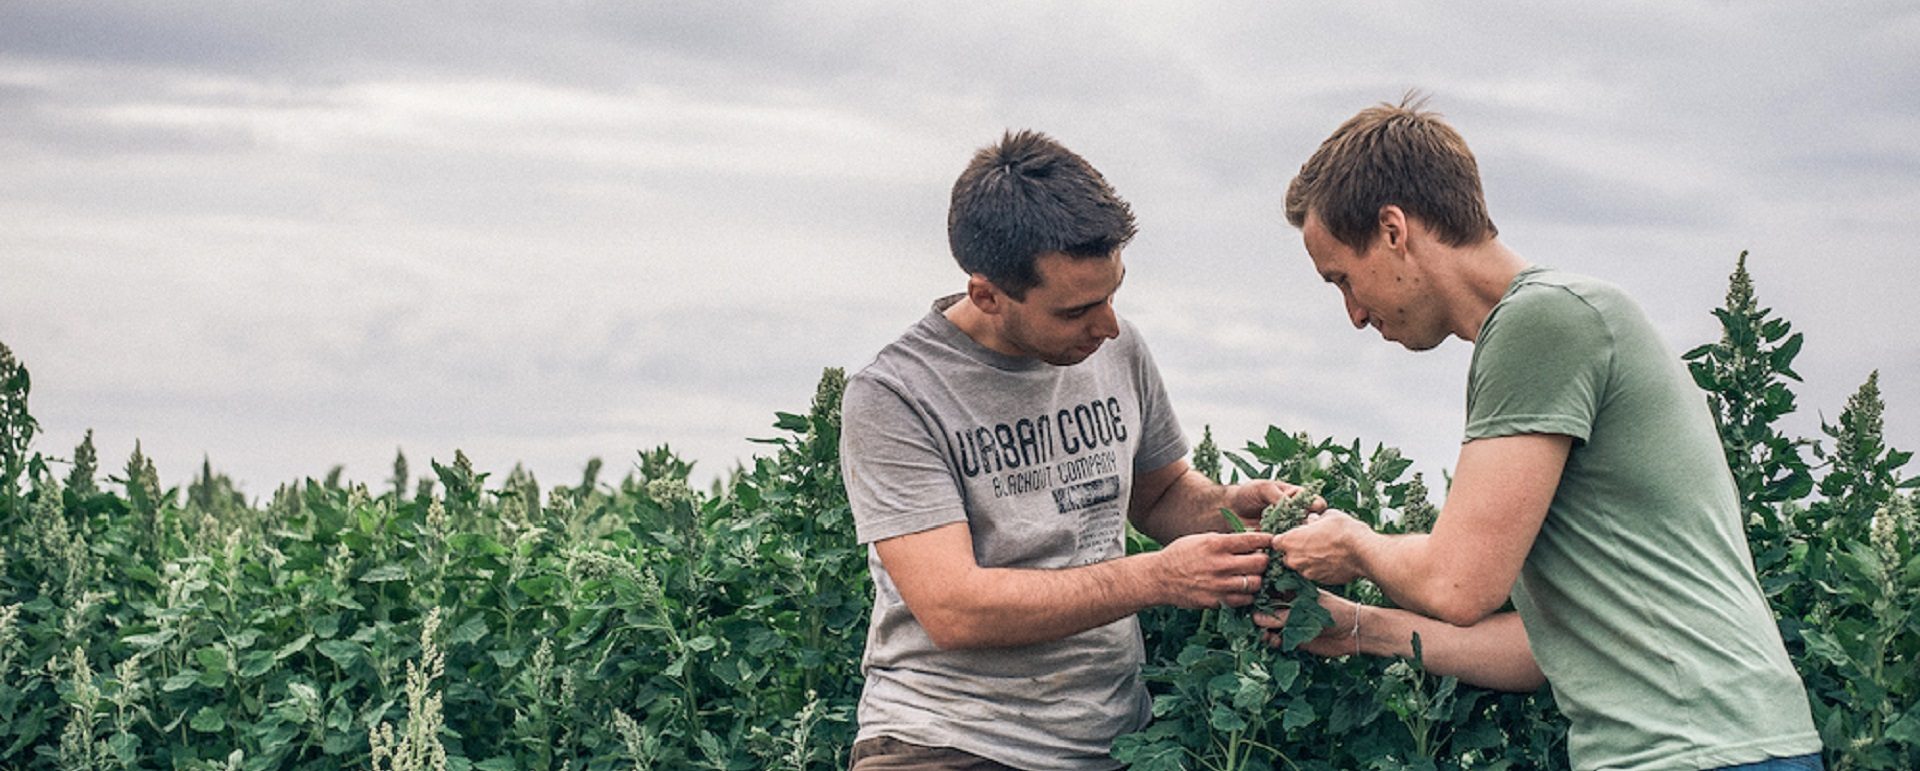 Dos hombres controlan el crecimiento de una planta Local exotics